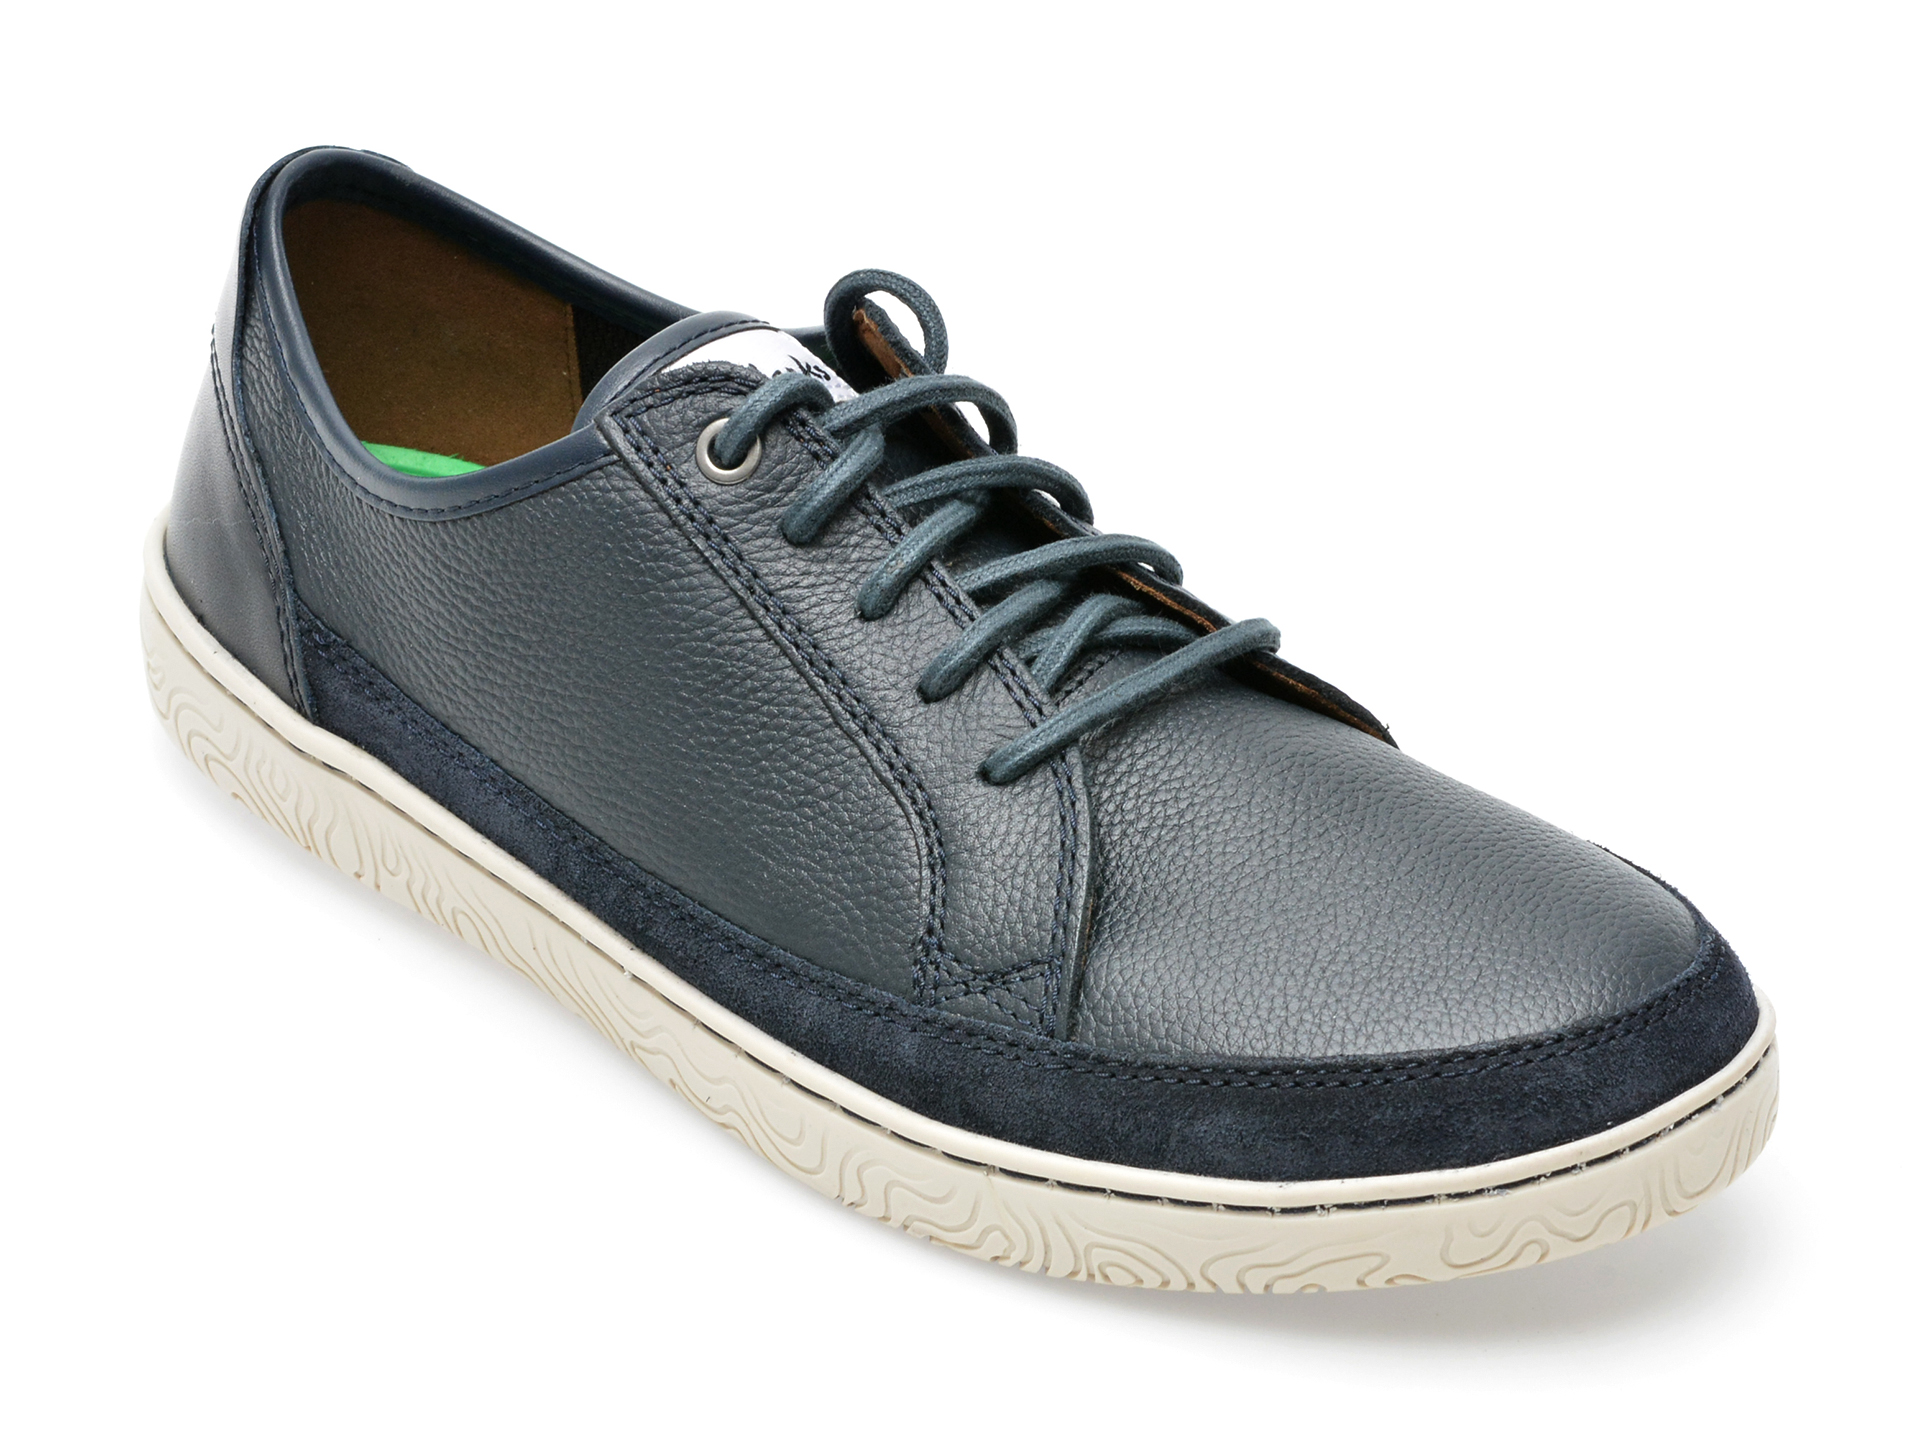 Pantofi CLARKS bleumarin, HODSLAC, din piele naturala